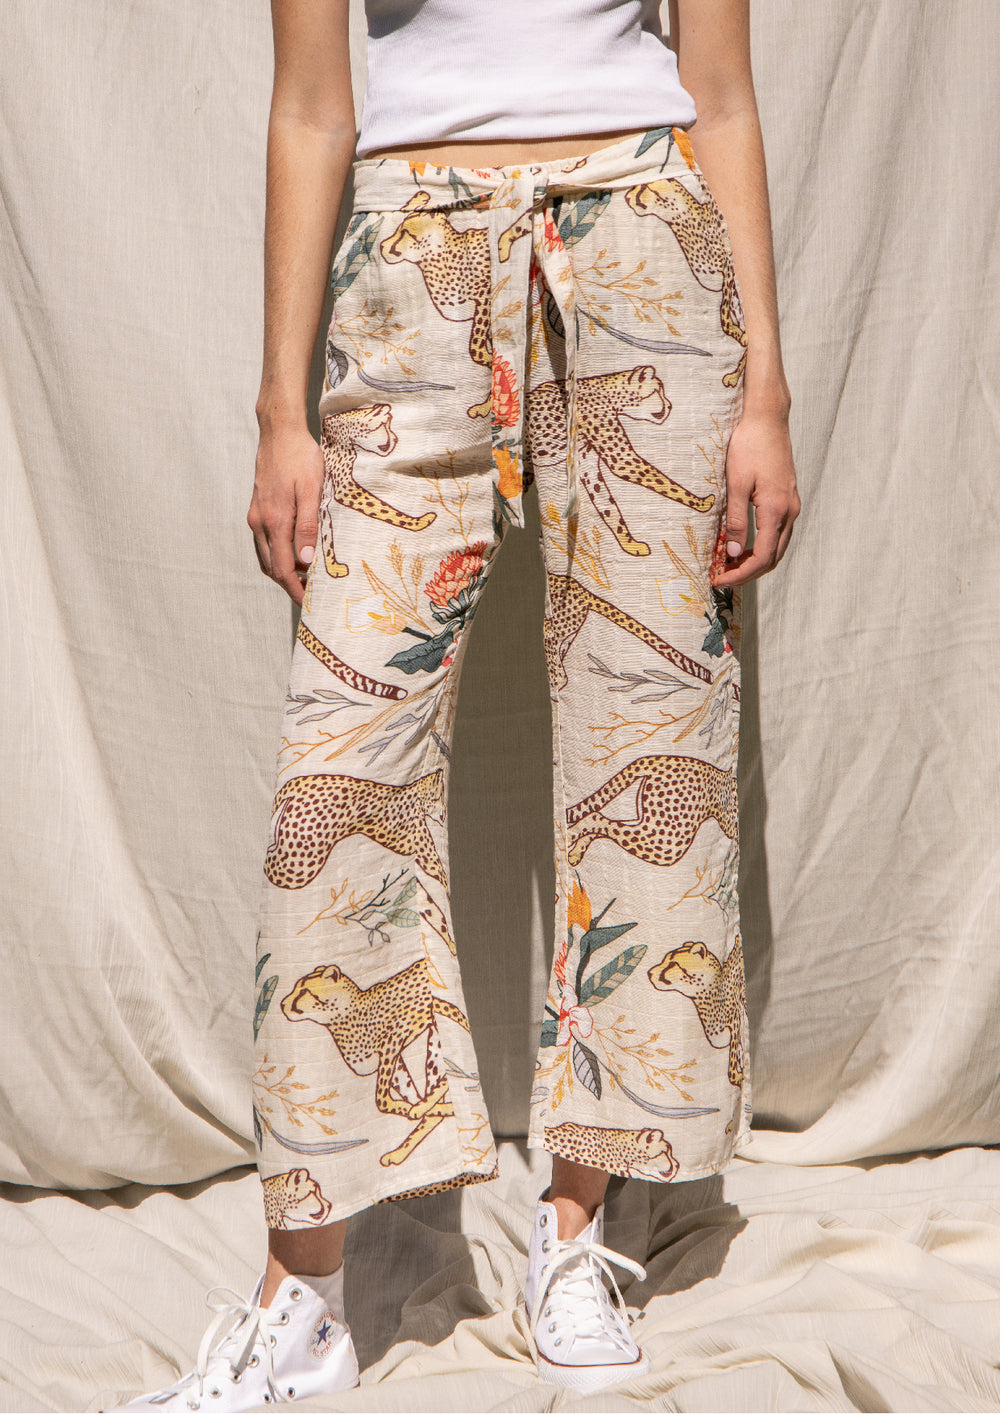 Cotton Linen Running Cheetah Print Pants